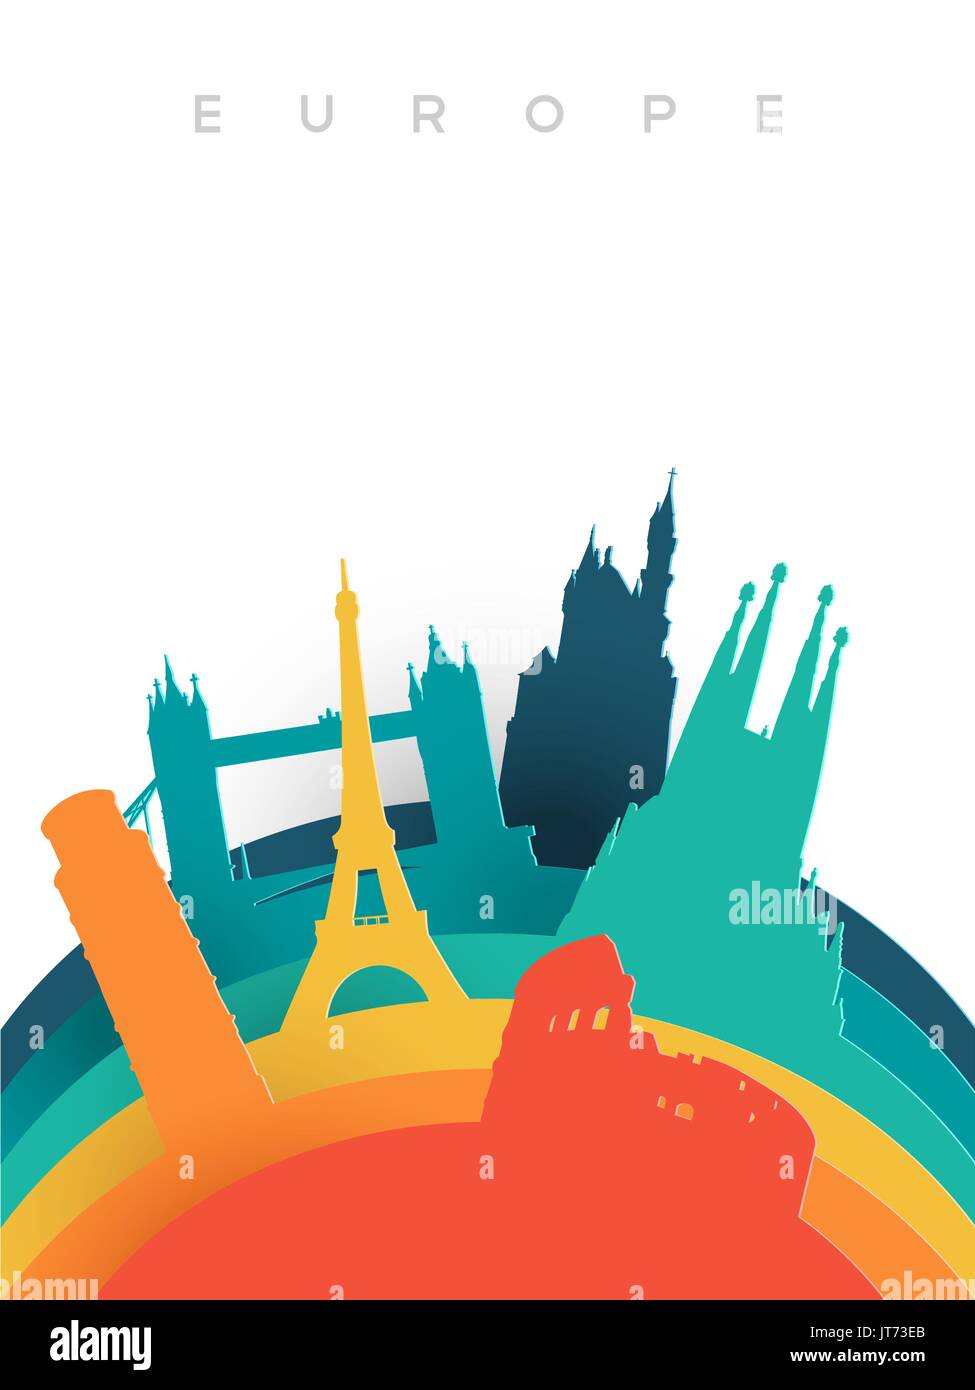 Billet d'Europe illustration en 3d, style coupe du monde européen de repère. Comprend la tour Eiffel, le pont de Londres, Rome colisée. Vecteur EPS10. Illustration de Vecteur